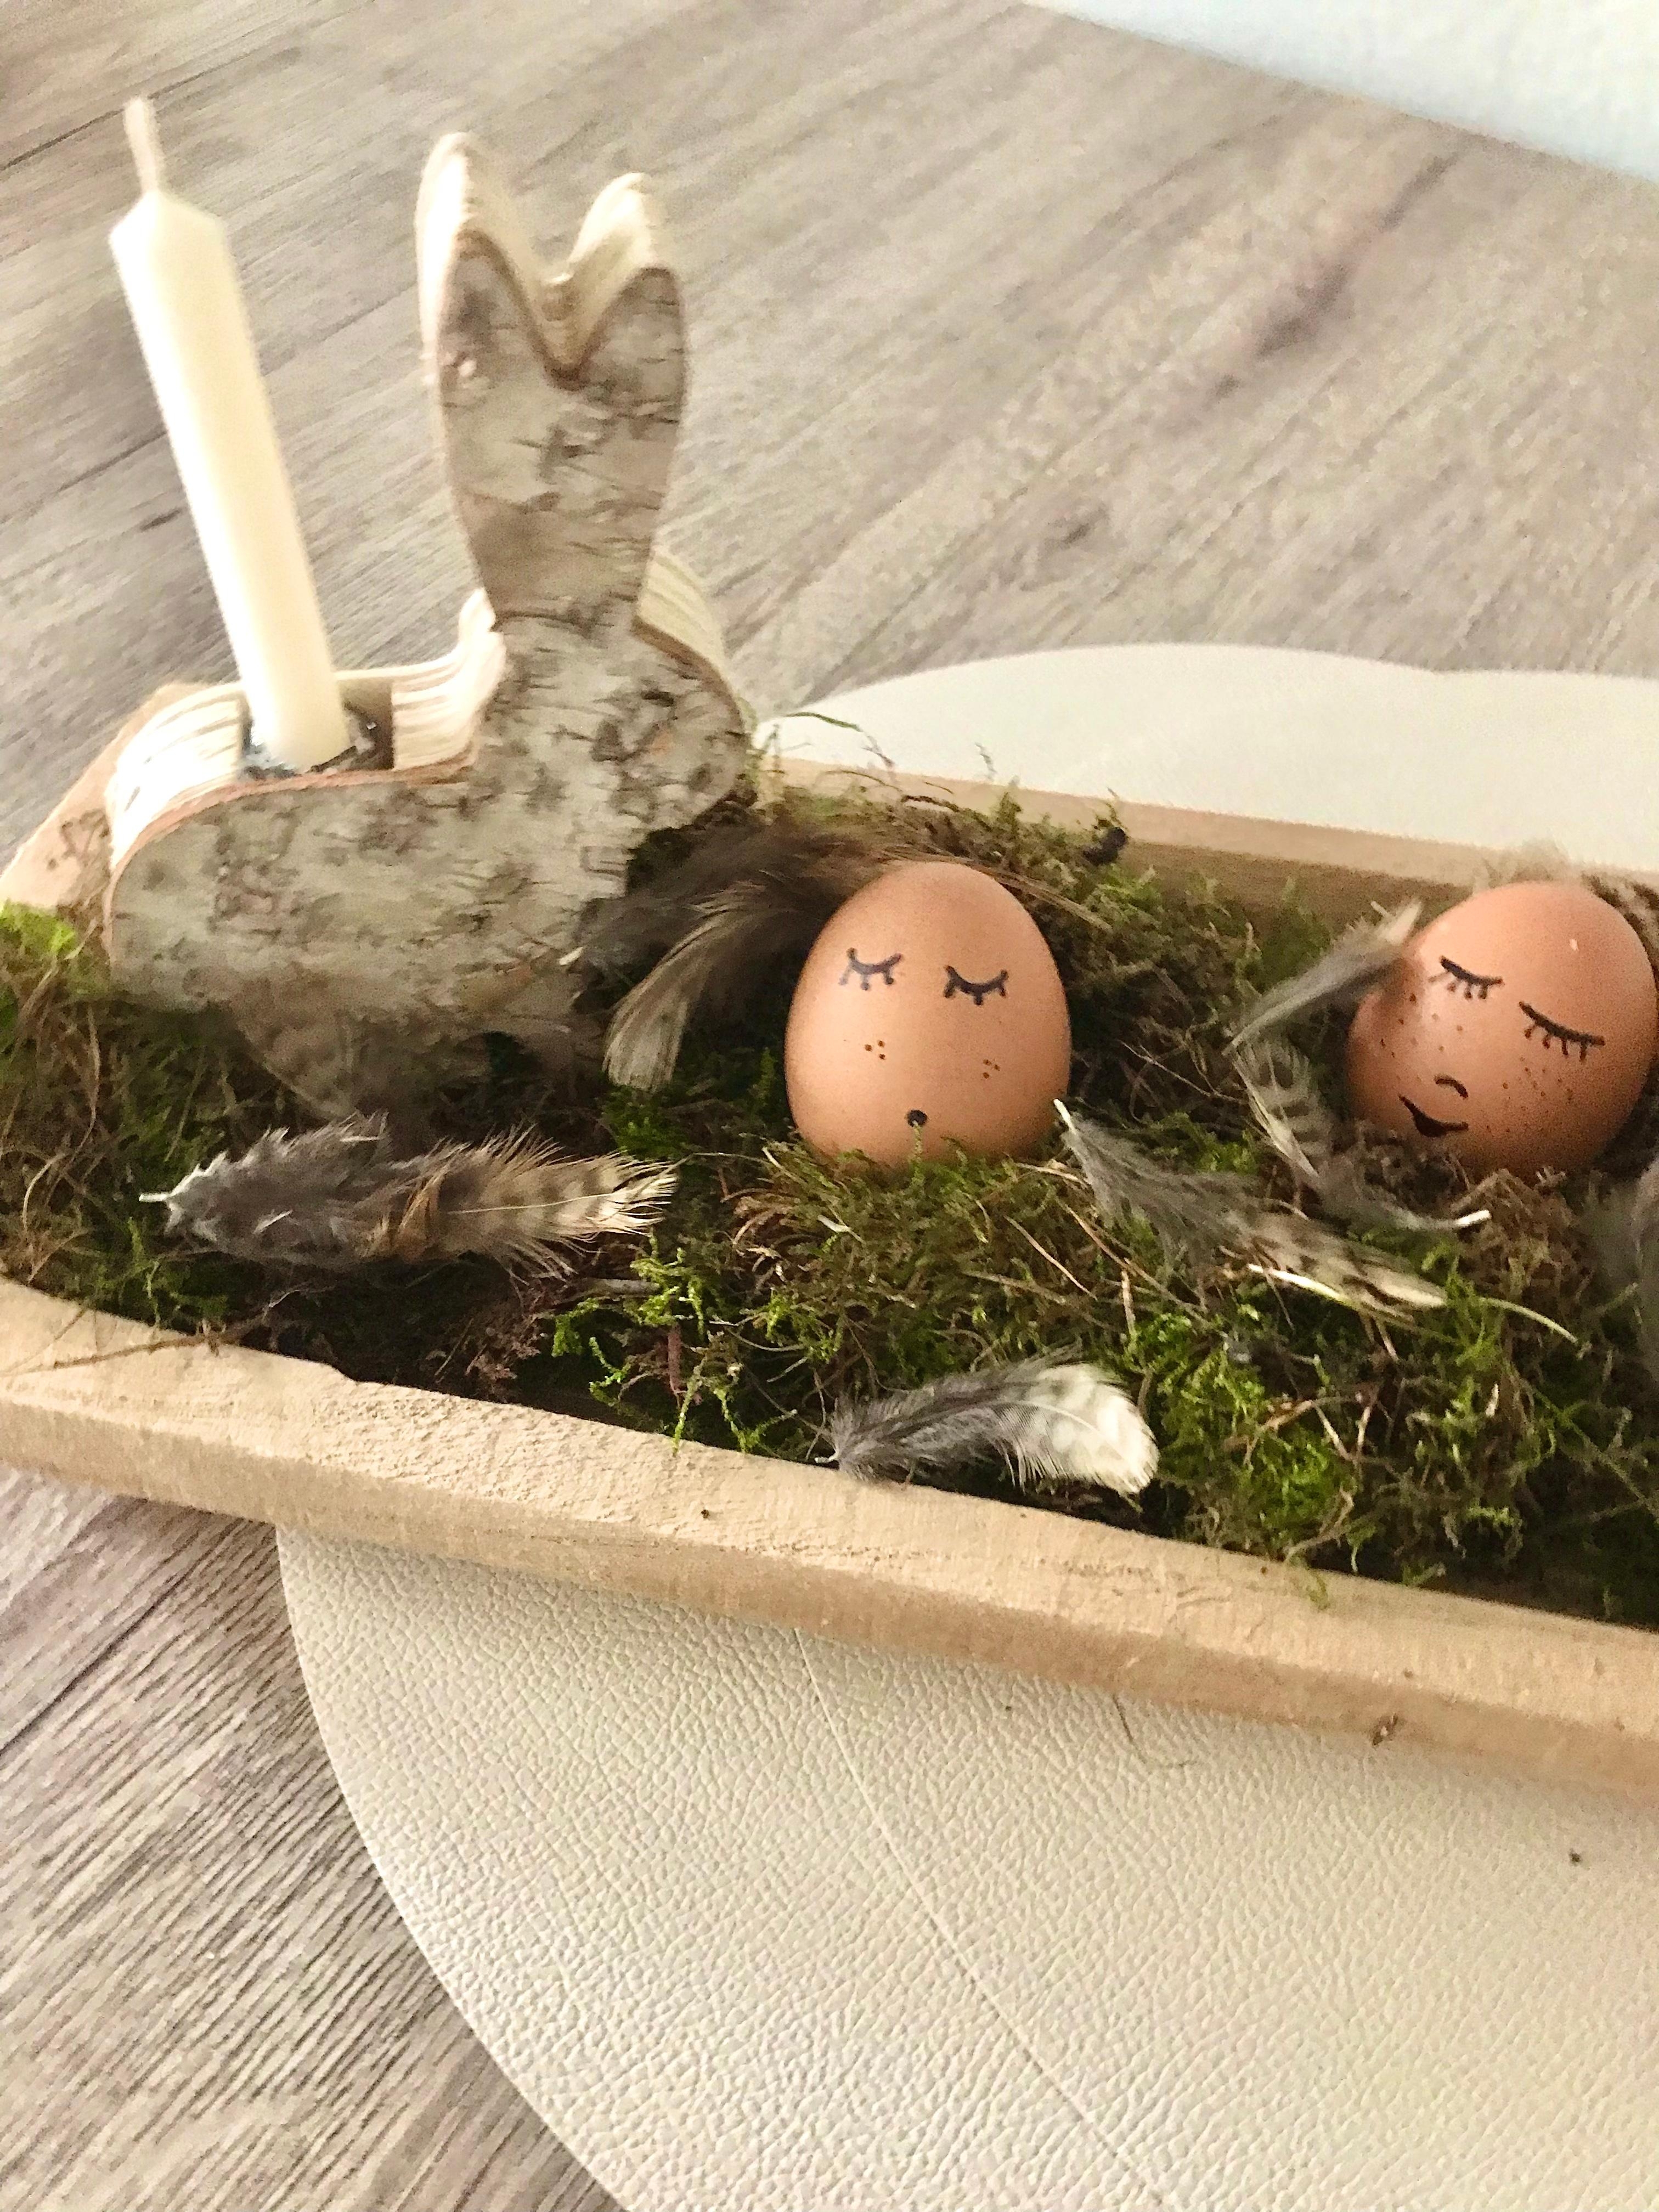 Die lustigen Eier haben ihren Platz bekommen 
#osterdeko #diy #holzbrett #natur #hase #kerze #tisch #küche #osterdiy